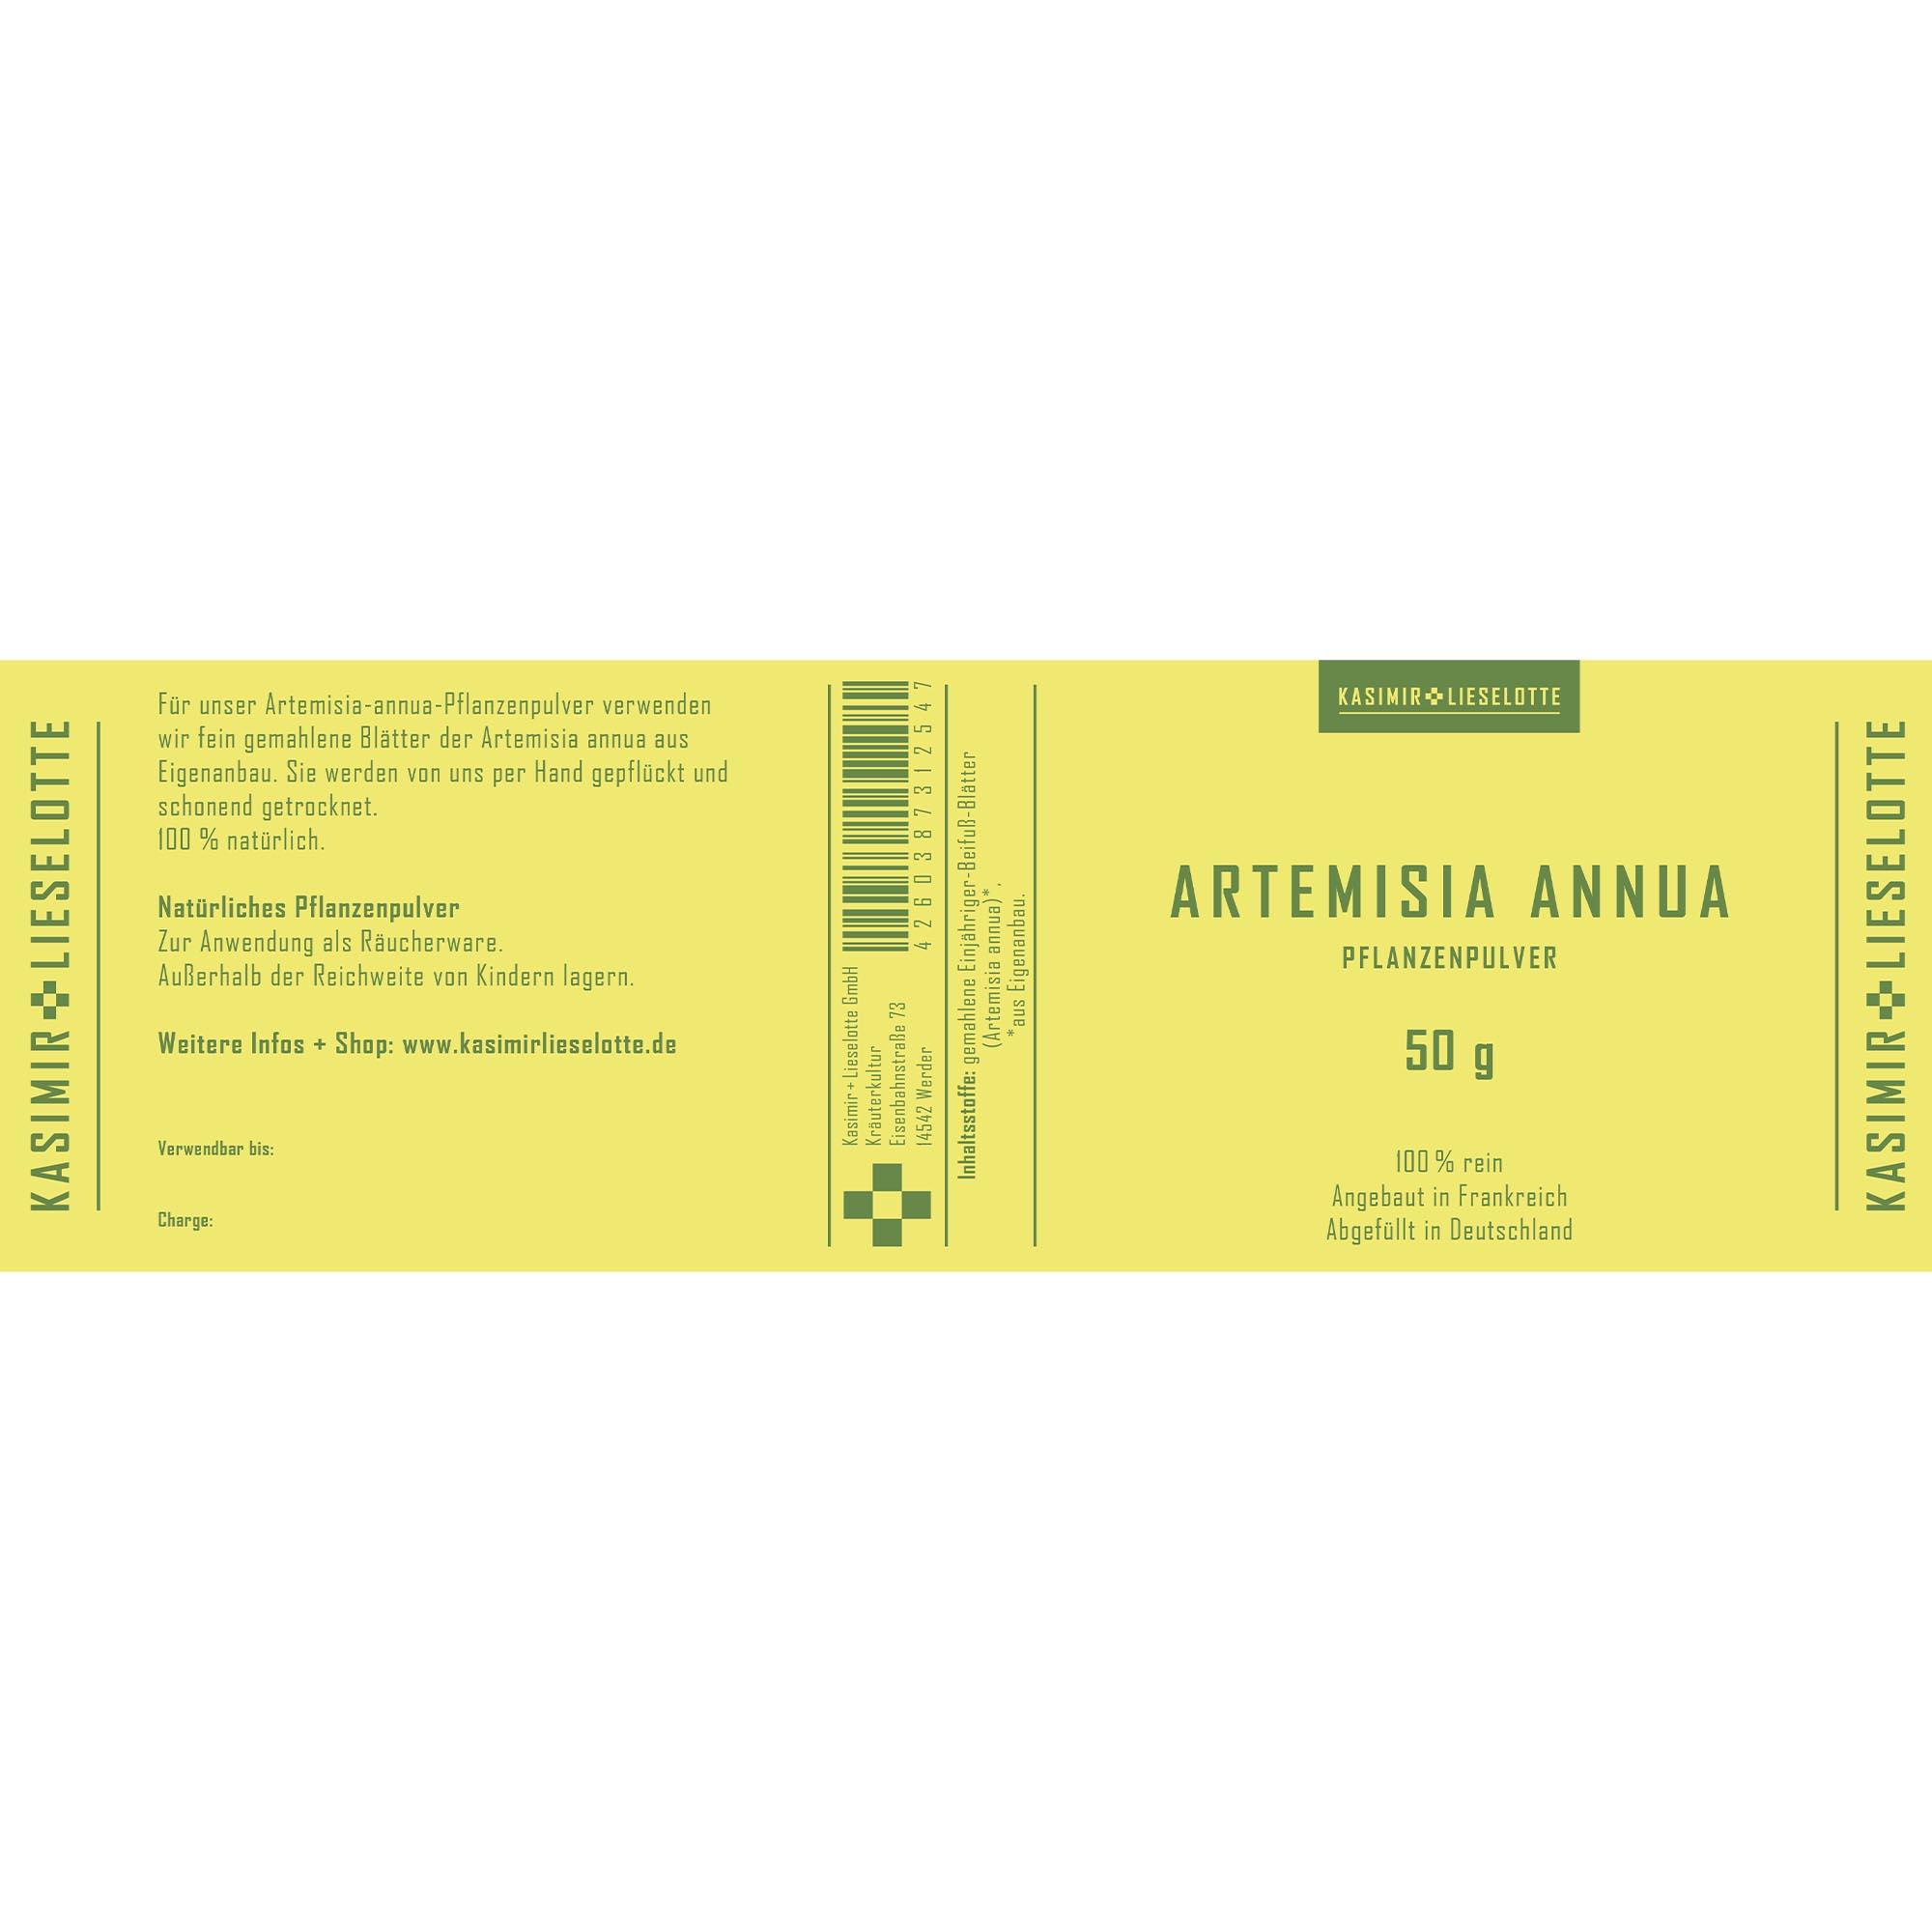 Artemisia annua Pulver - Auswahl: 50 g